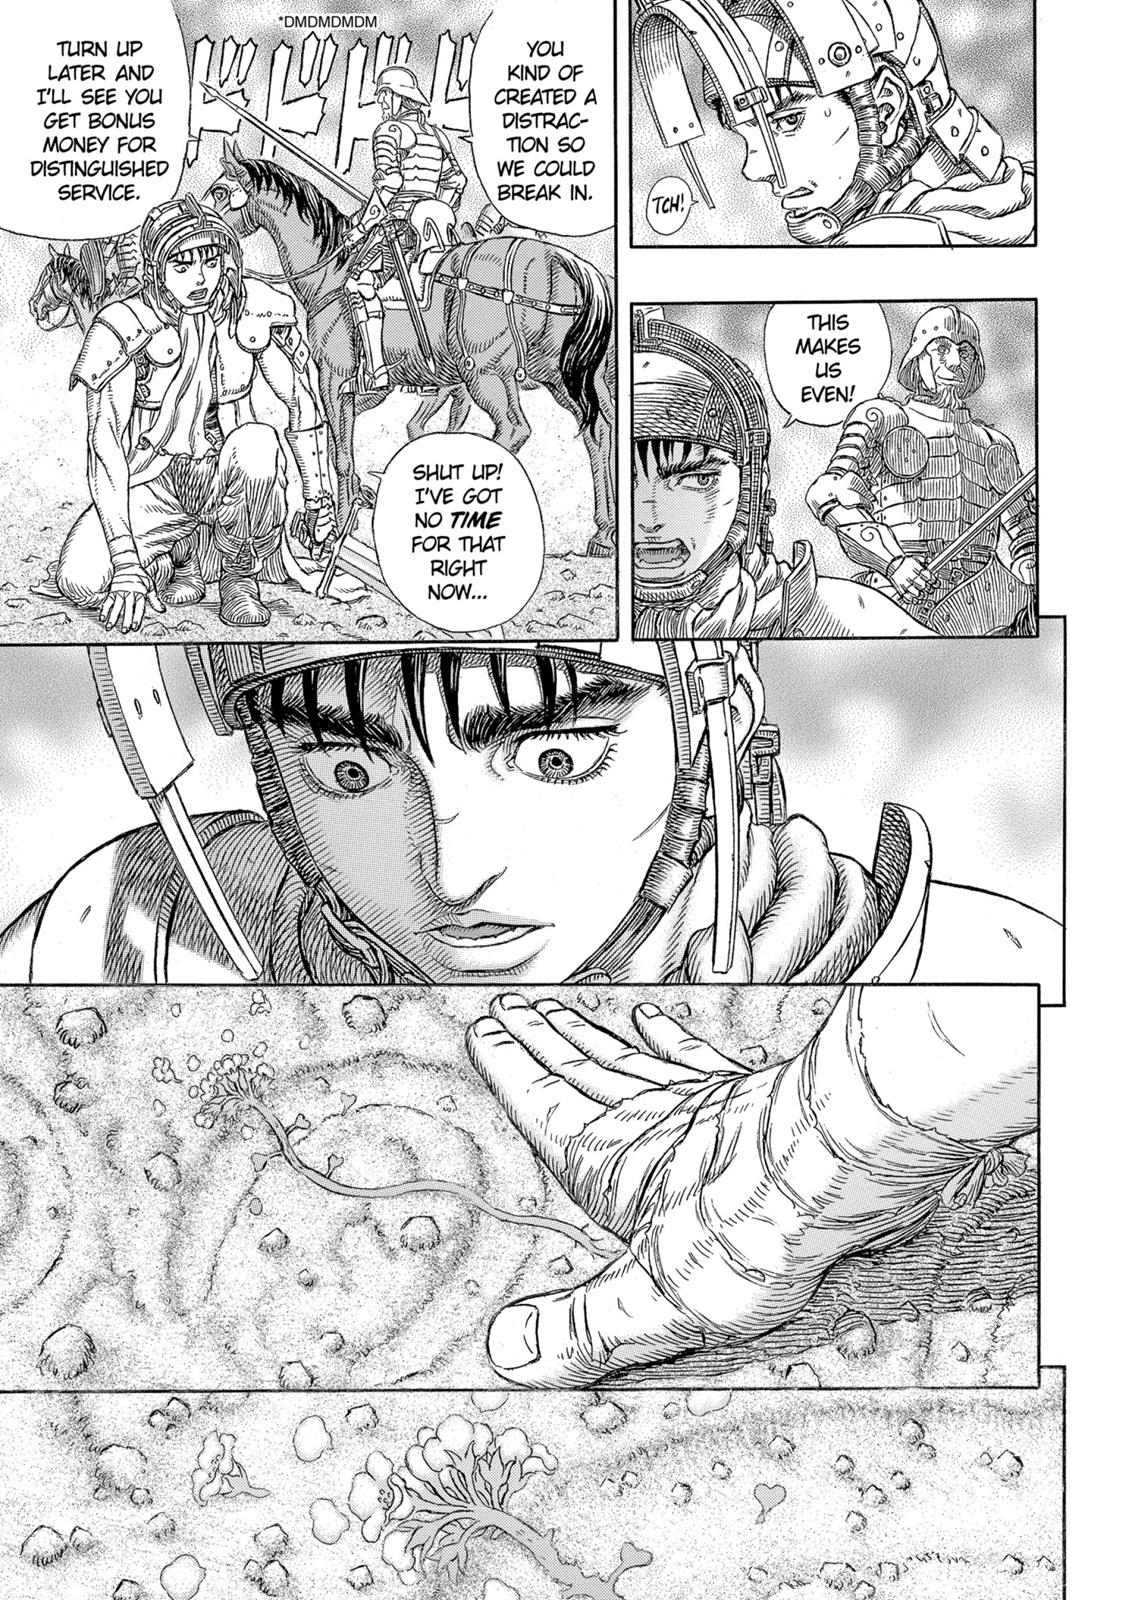 Berserk Manga Chapter 331 image 21